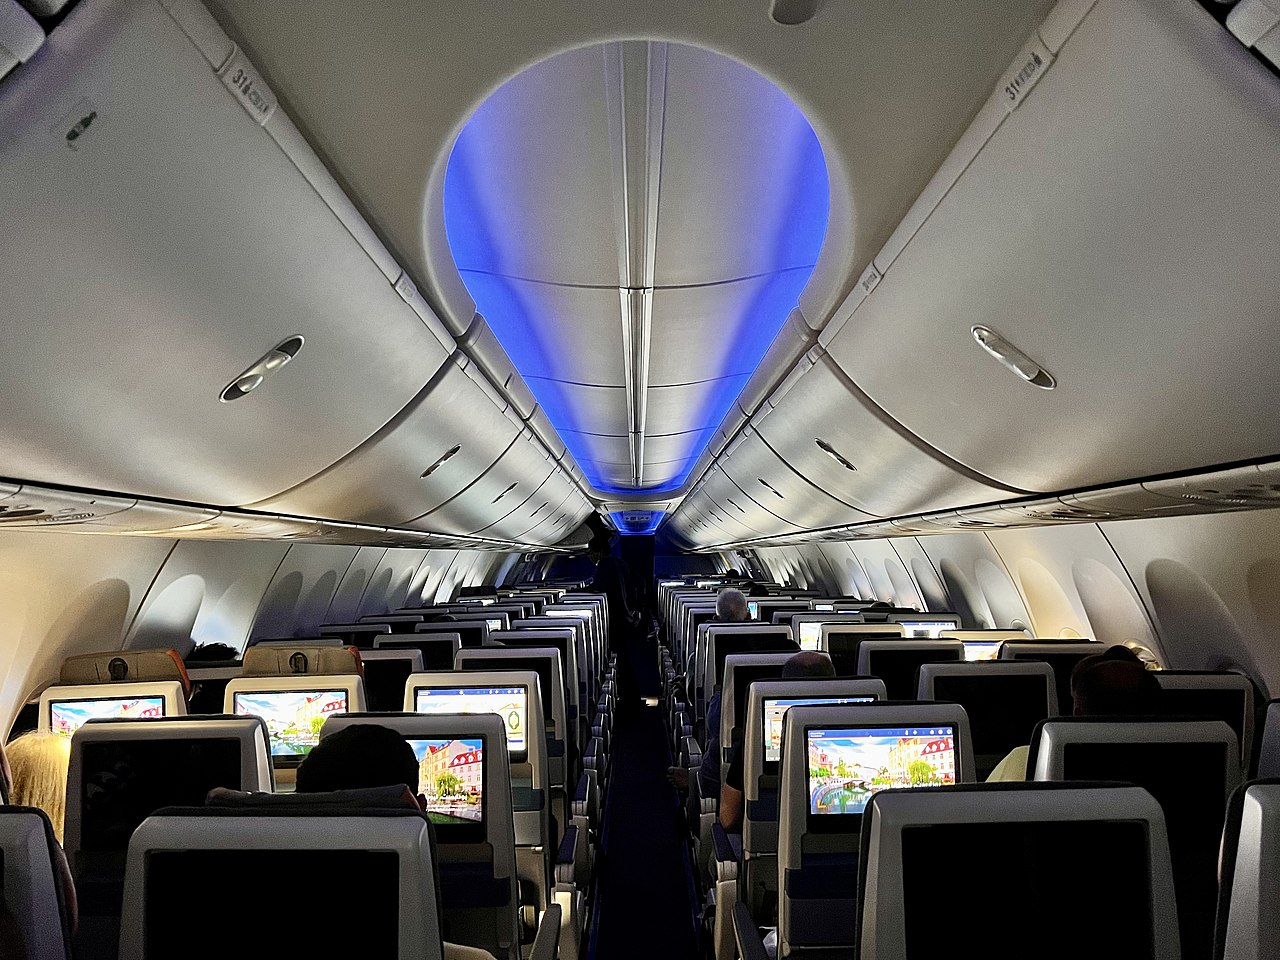 Interior shot of Boeing 737 cabin.